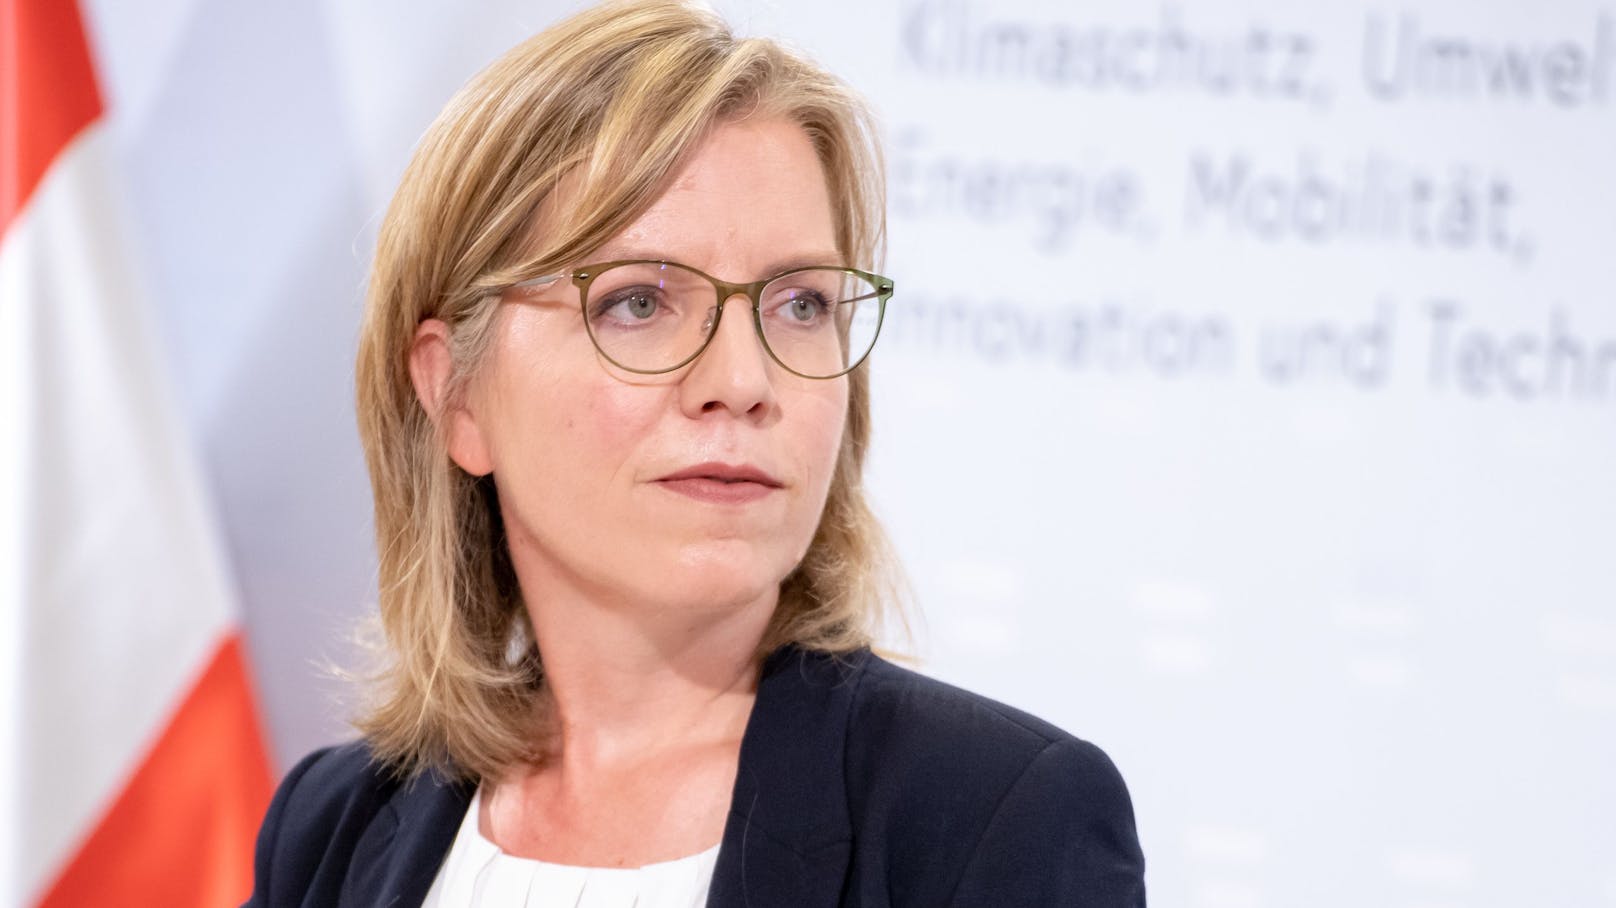 Verkehrsministerin Leonore Gewessler (Grüne) bei einer Pressekonferenz am 31. Juli 2020